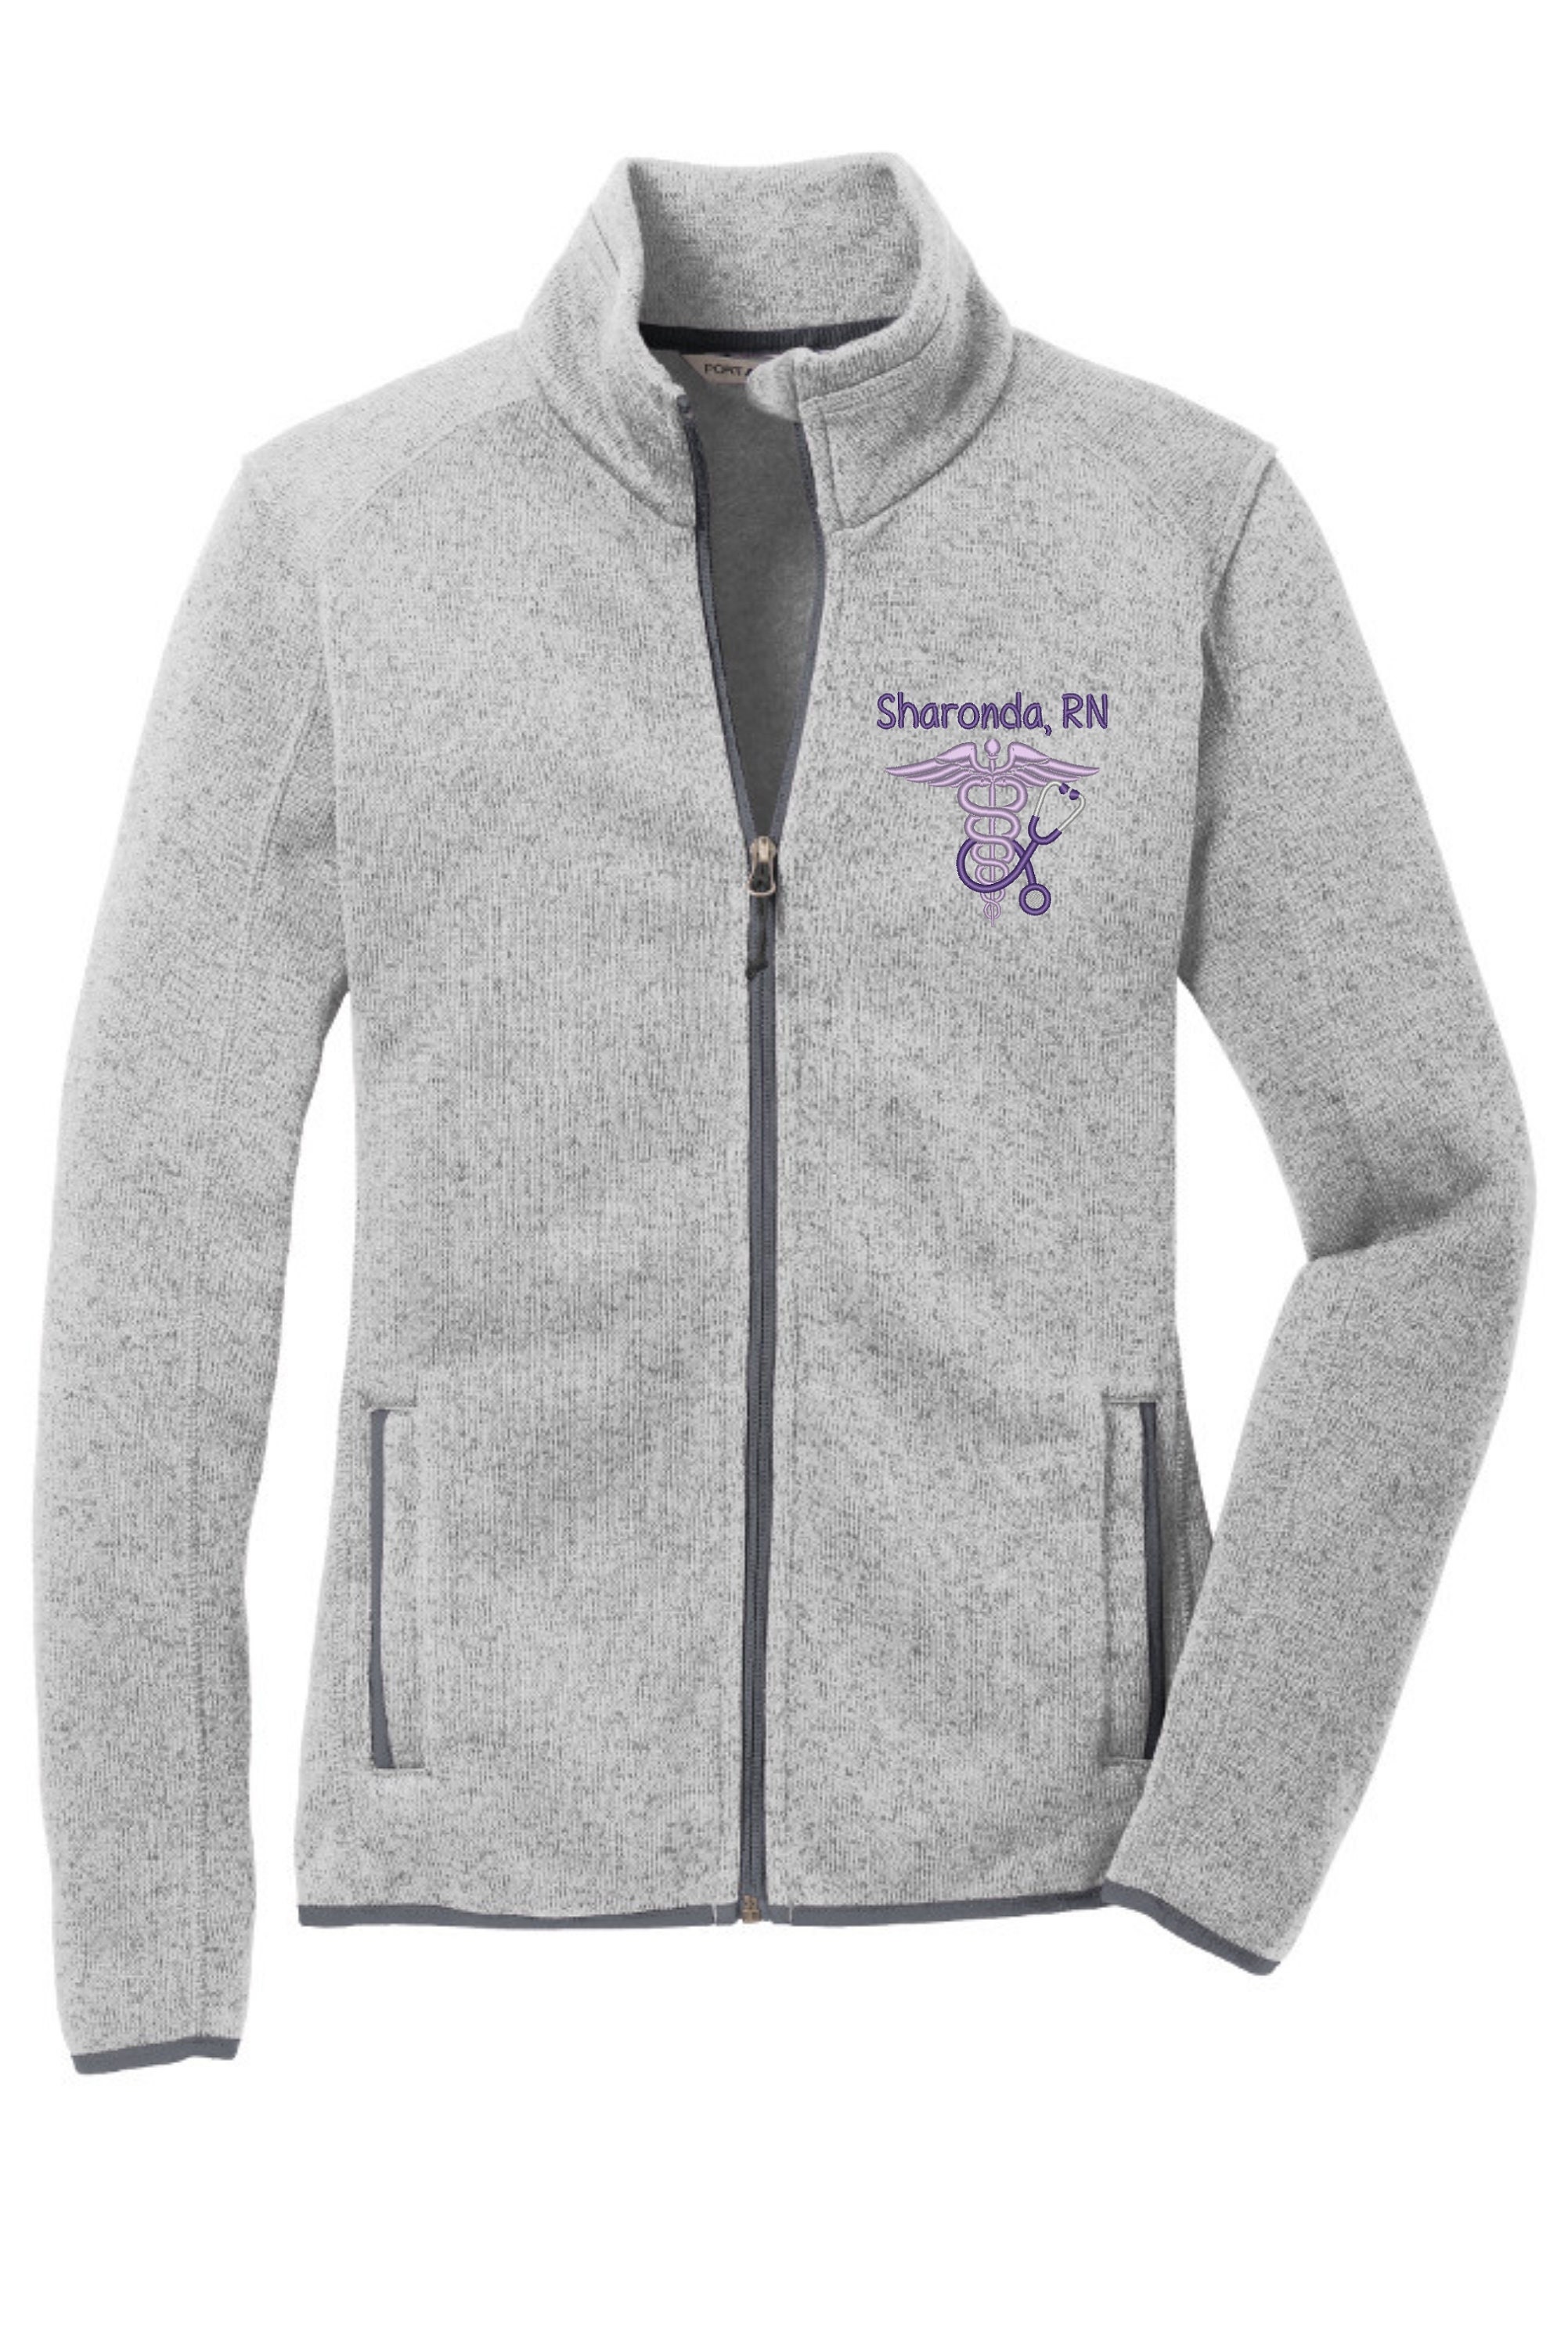 JEA L232 Ladies Unisex Port Authority Sweater Fleece Jacket (Grey Heather)  - Orriginals